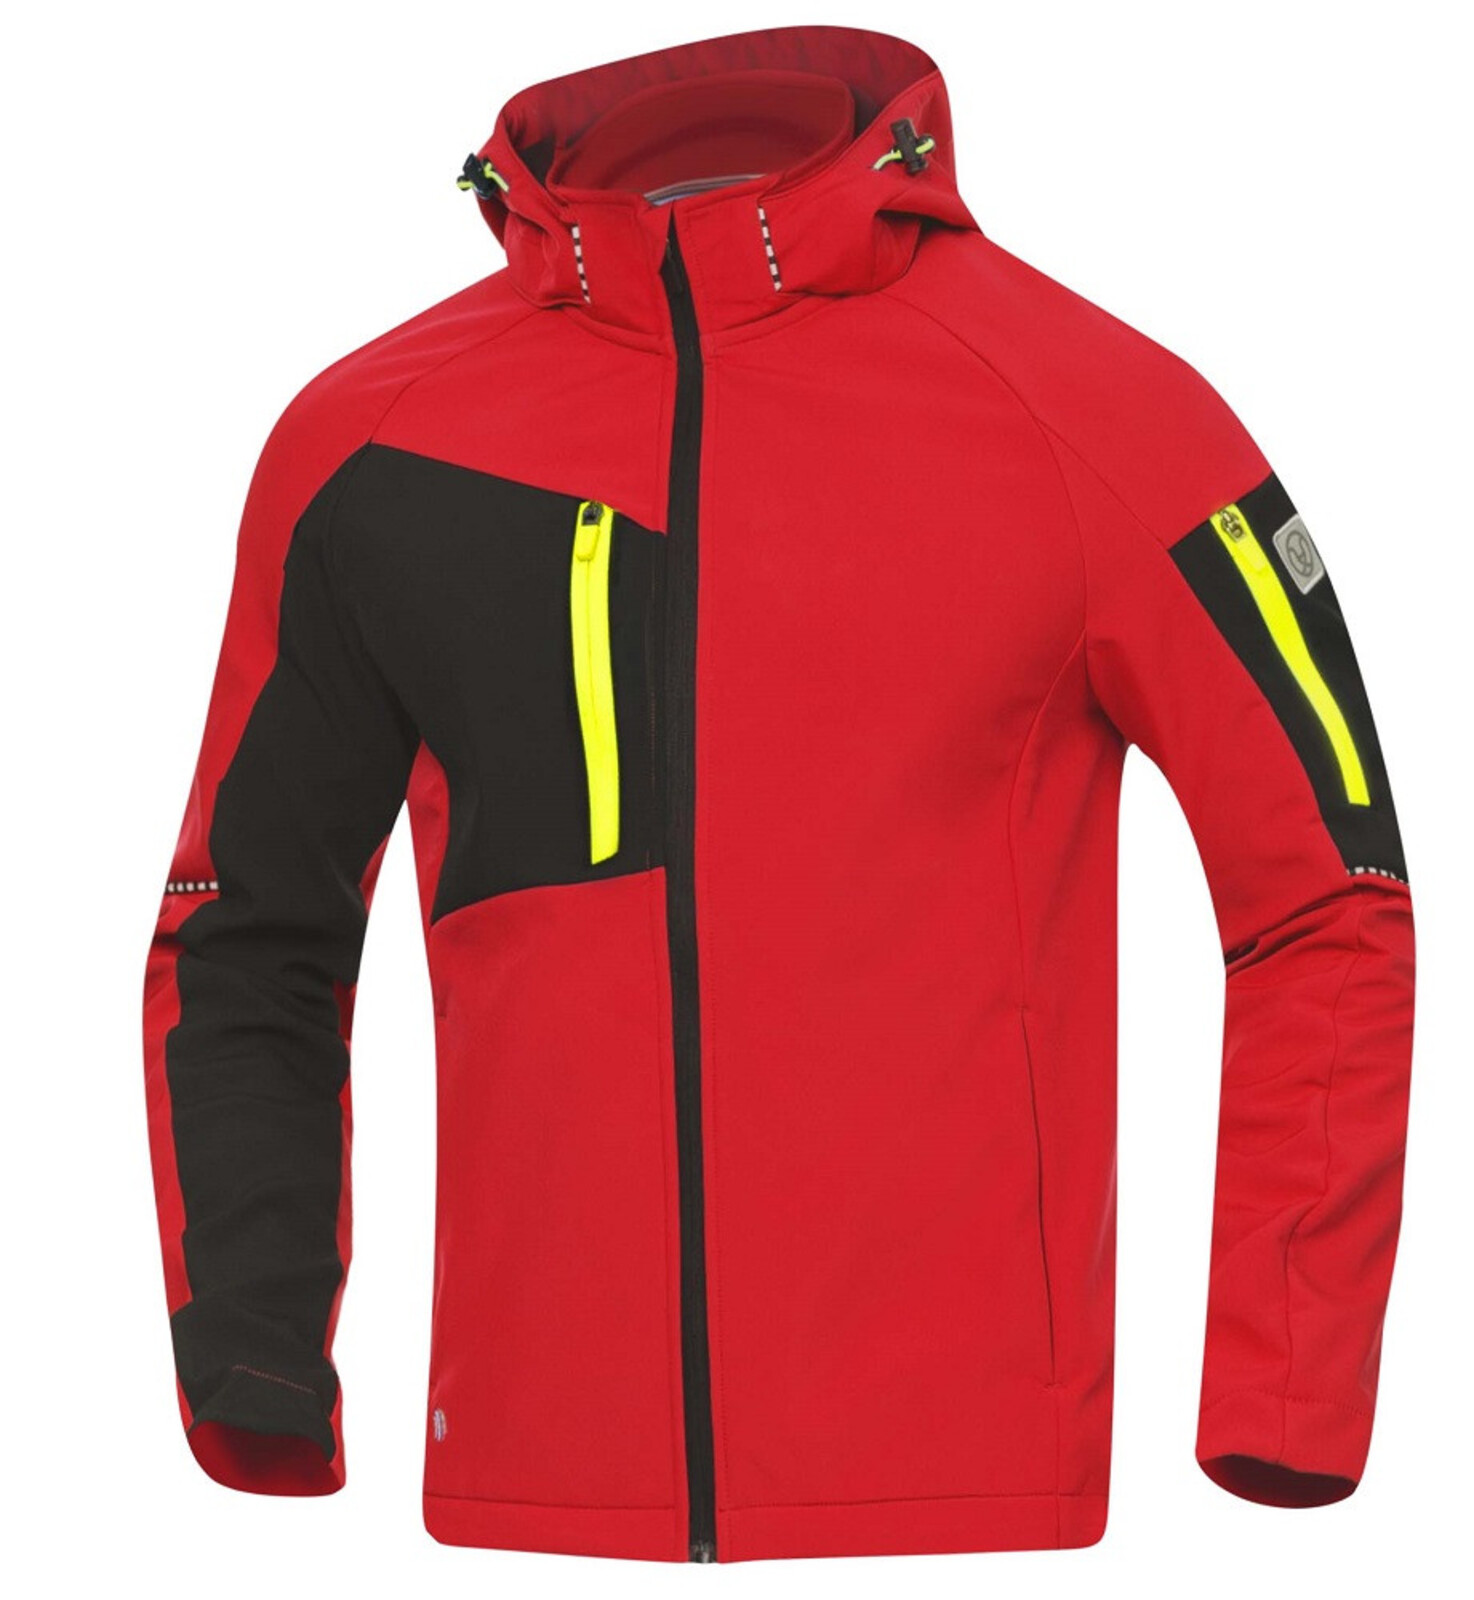 Pánska softshellová bunda Ardon Cityconic - veľkosť: M, farba: červená/čierna